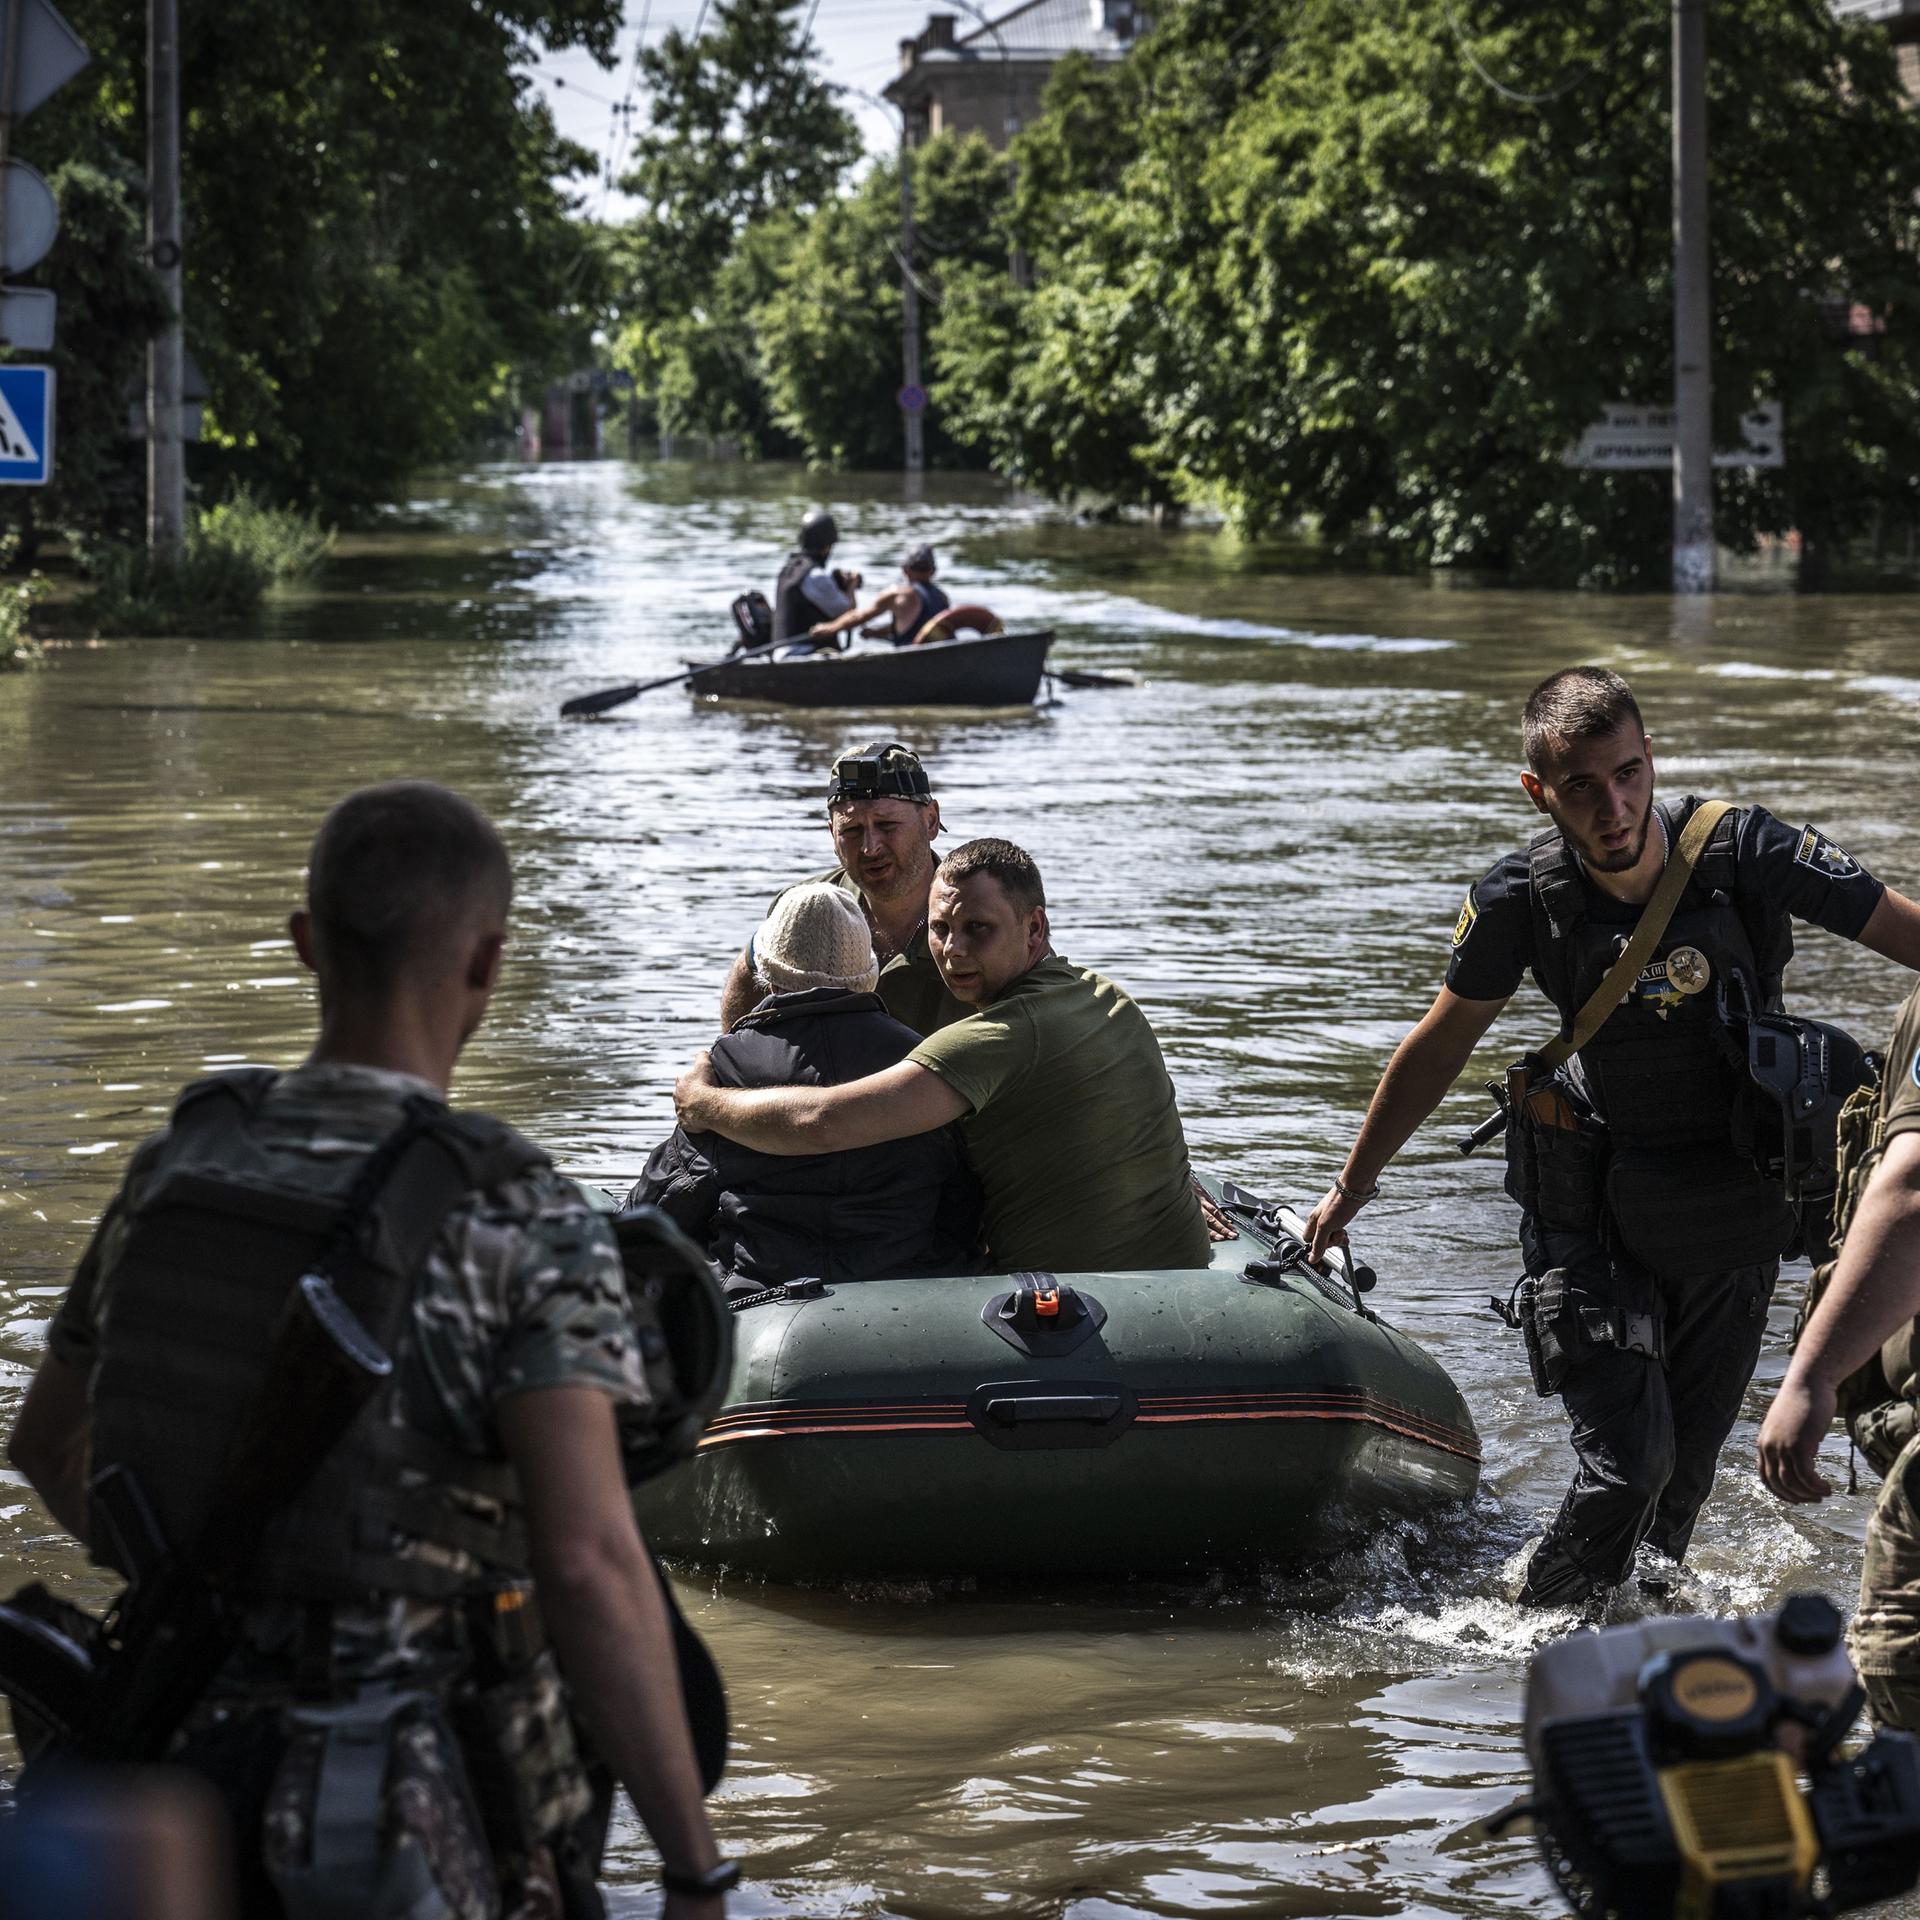 Menschen werden aus überschwemmten Gebieten evakuiert, nachdem die Explosion im Wasserkraftwerk Kachowka am 7. Juni 2023 in Cherson, Ukraine, zu Überschwemmungen geführt hat. Zu sehen ist eine überflutete Straße mit Zivilisten in Schlauchbooten und Soldaten, die Hilfe leisten.